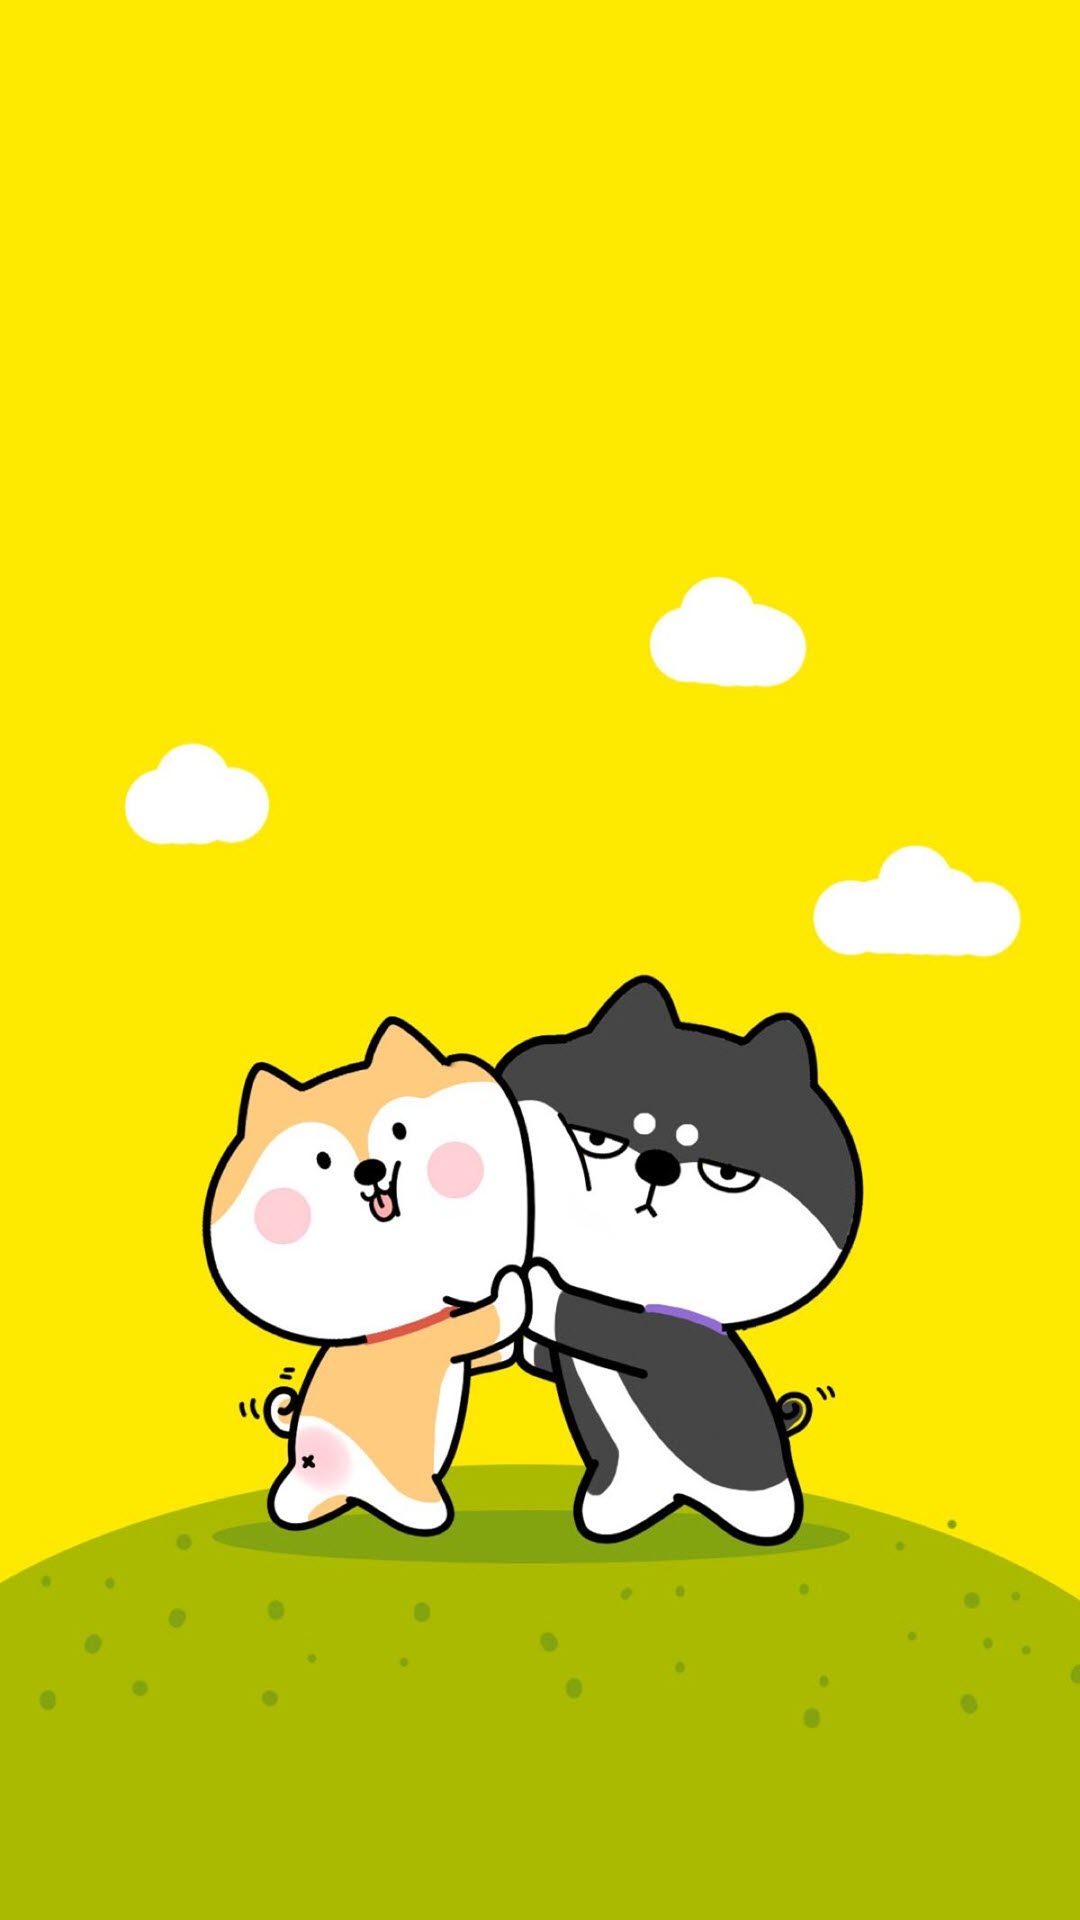 Ảnh Chó Cute Chibi  75 Hình Nền Chó Shiba Chibi Anime Chó  Doodle dễ  thương Hình vẽ dễ thương Anime